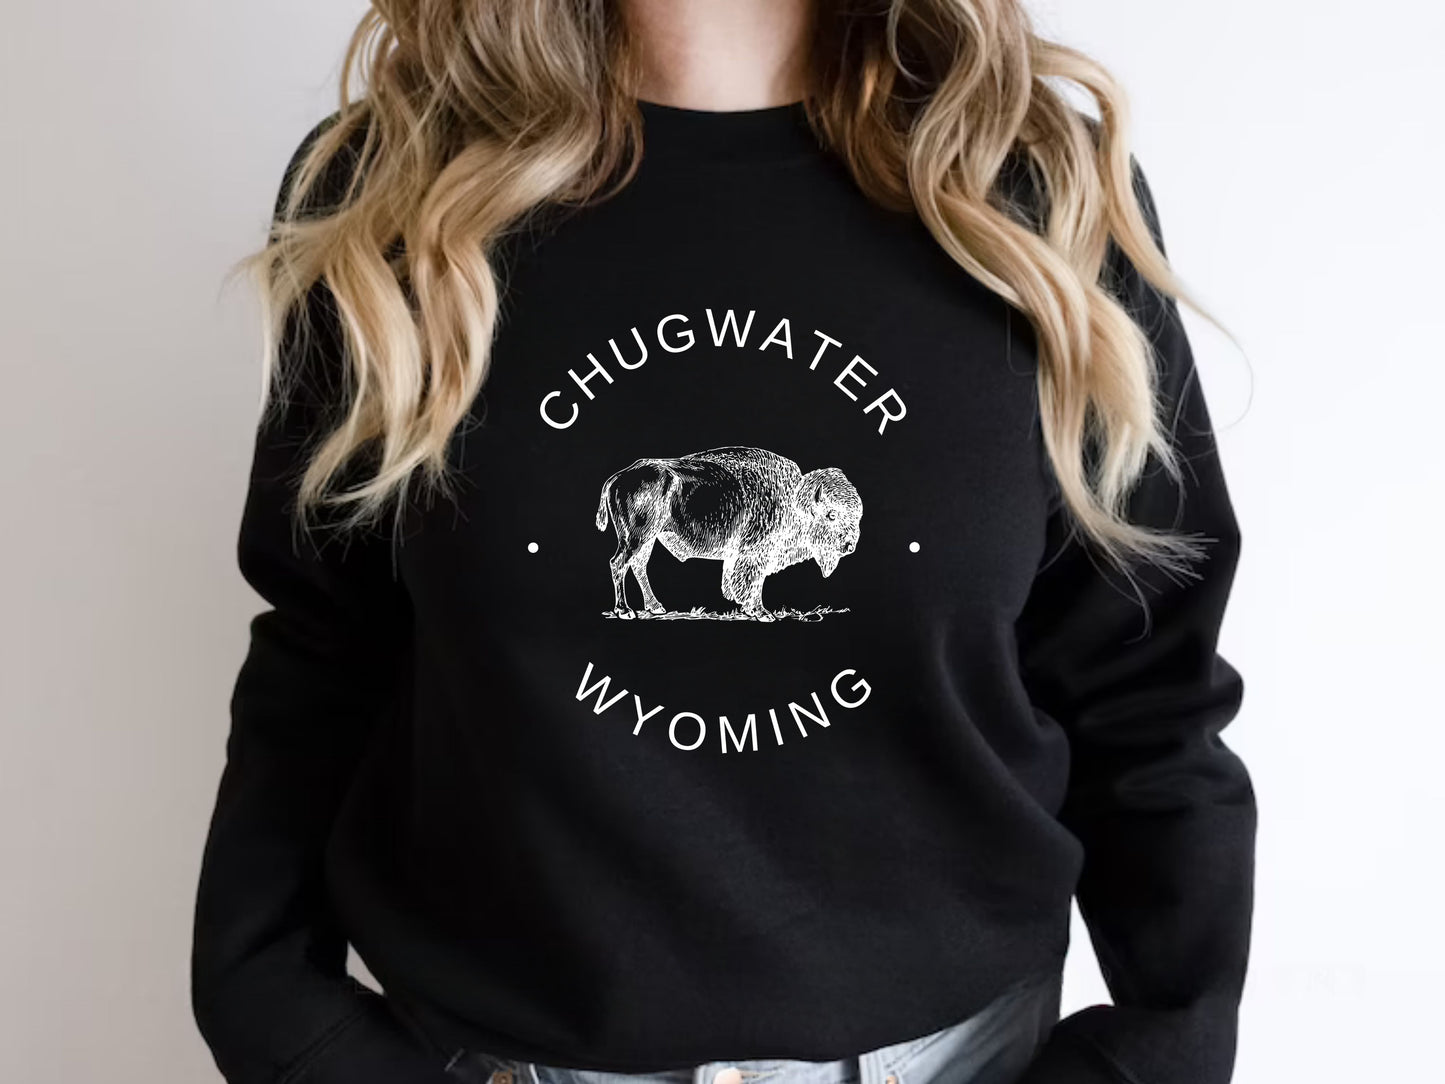 Chugwater Women Wyoming Sweatshirt